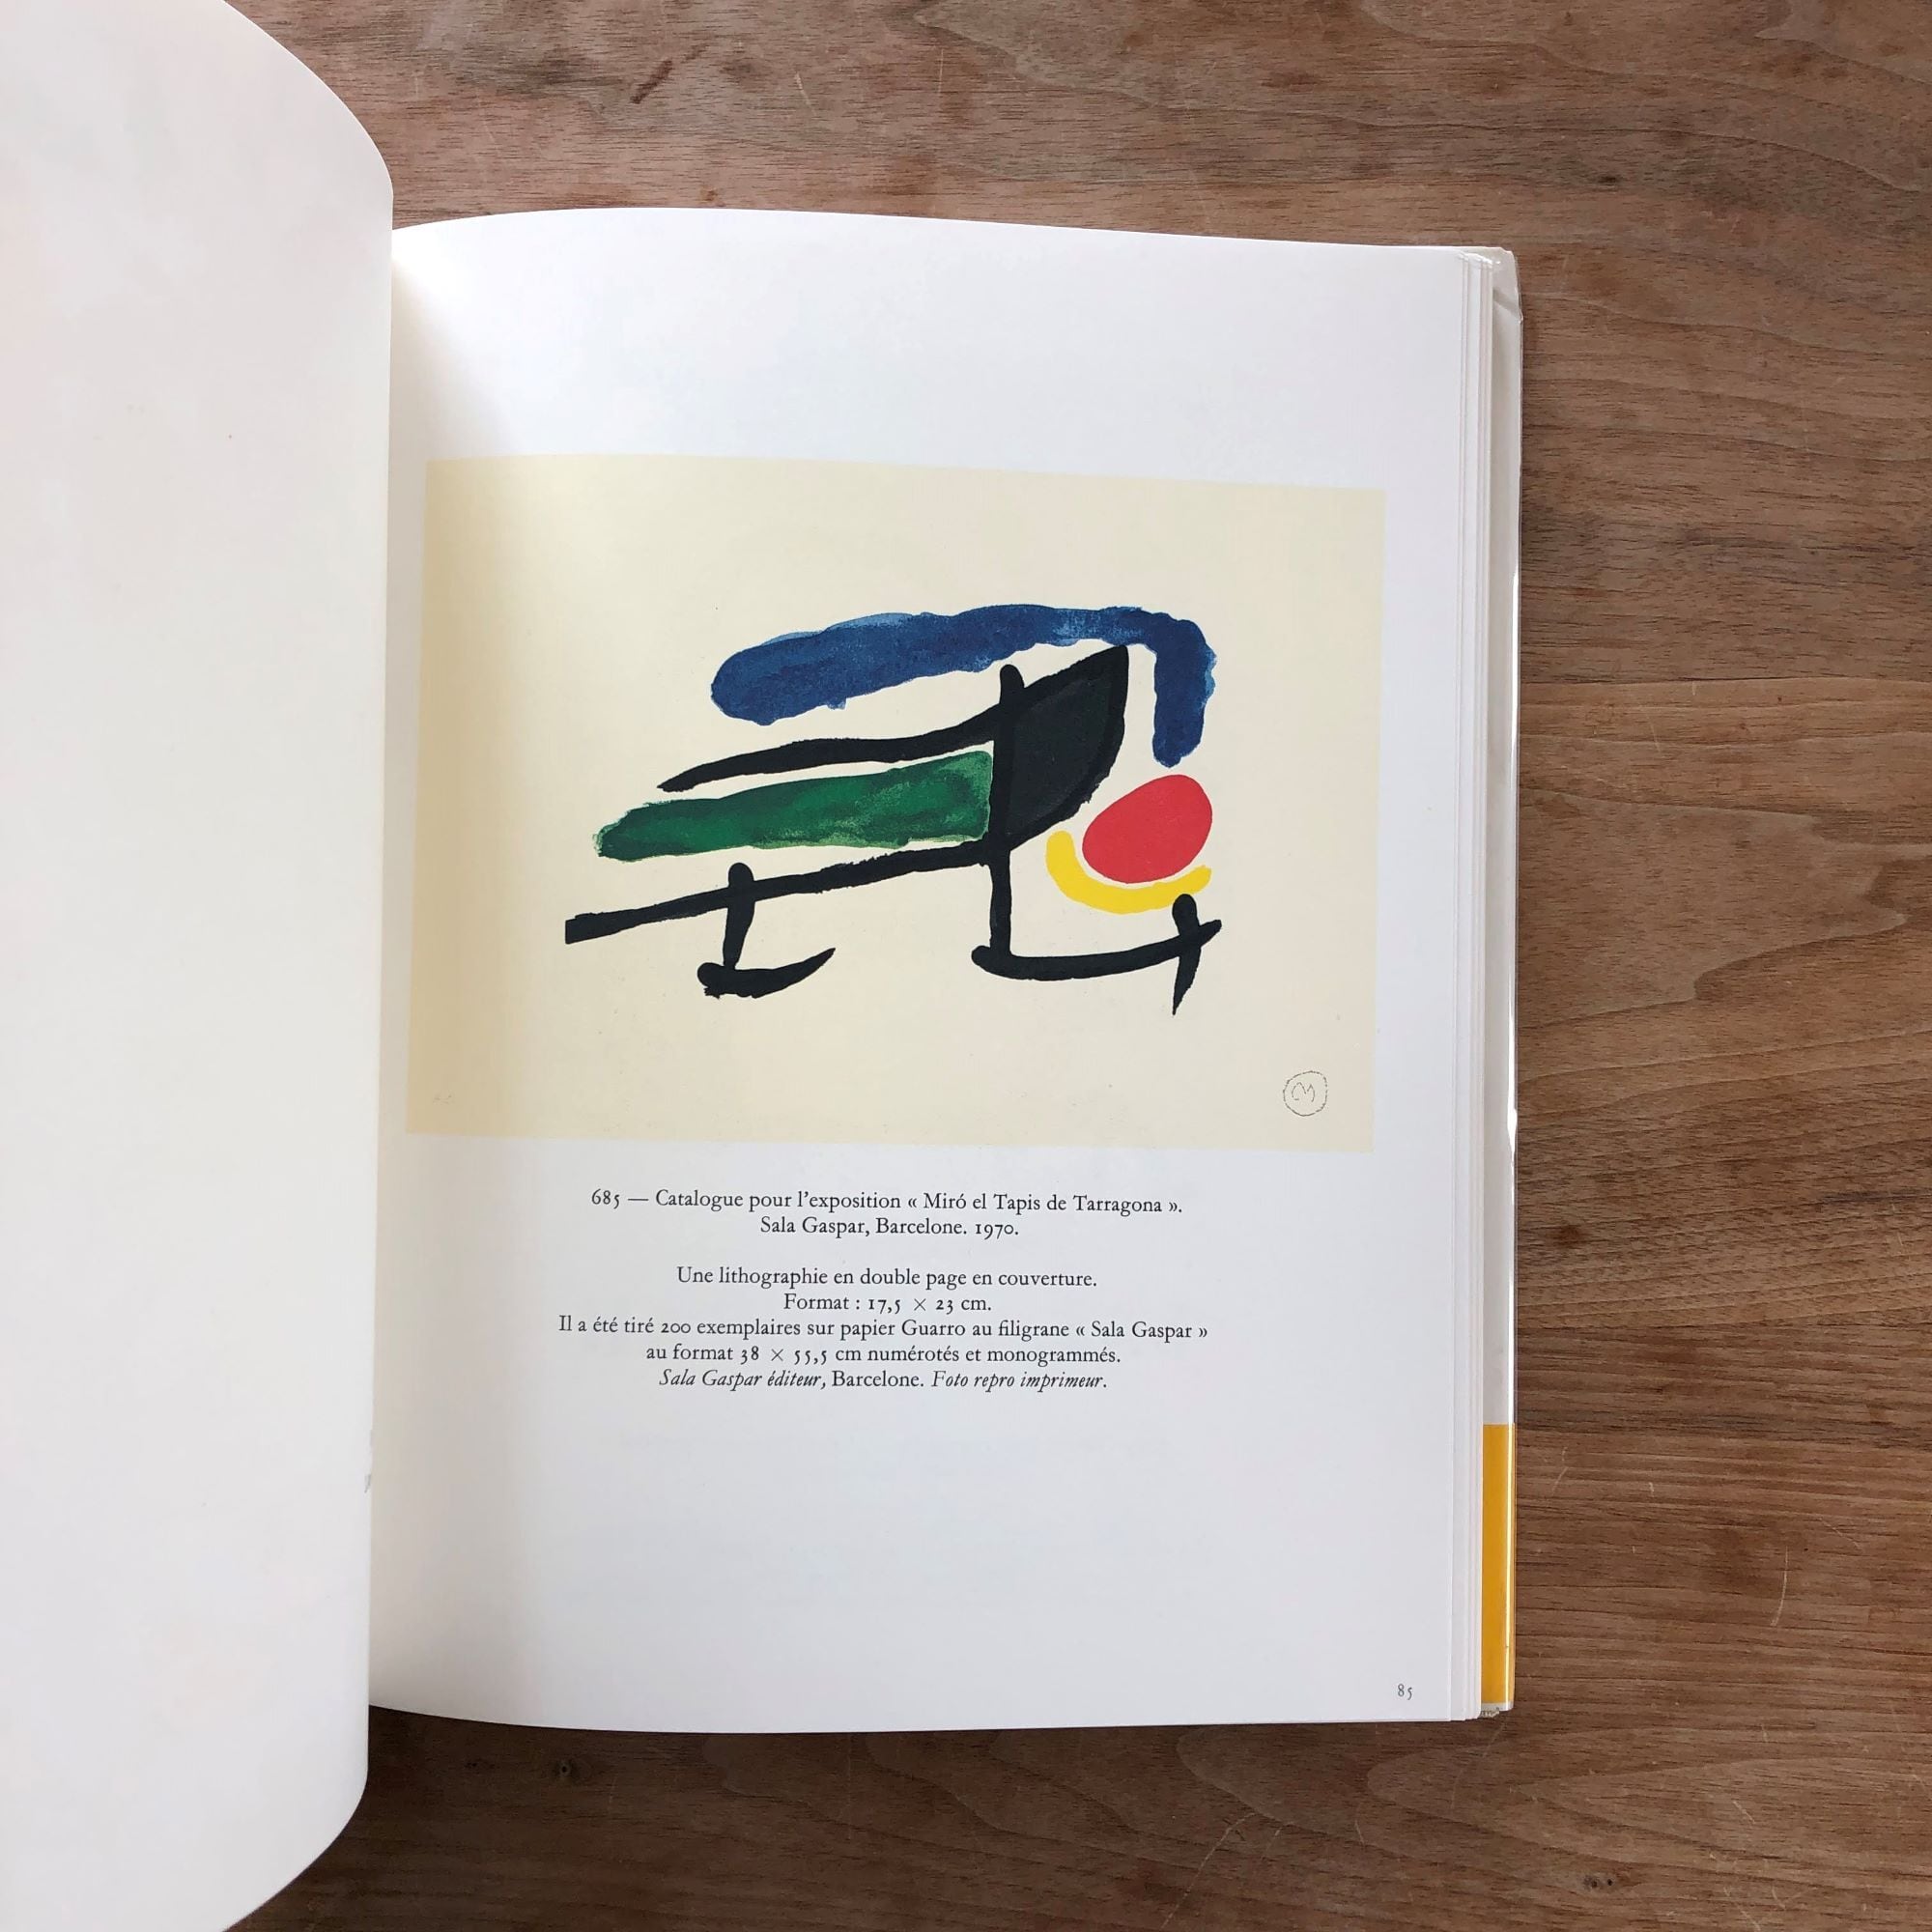 送料込】Joan Miro Lithographs Volume1,2,3,4,5,6  画集(作品集・Artworks・Paintings・Collections・美術本） | NF Artbooks & Objects  画集などの美術本の古本を販売 Paintings, Artwoks,LP